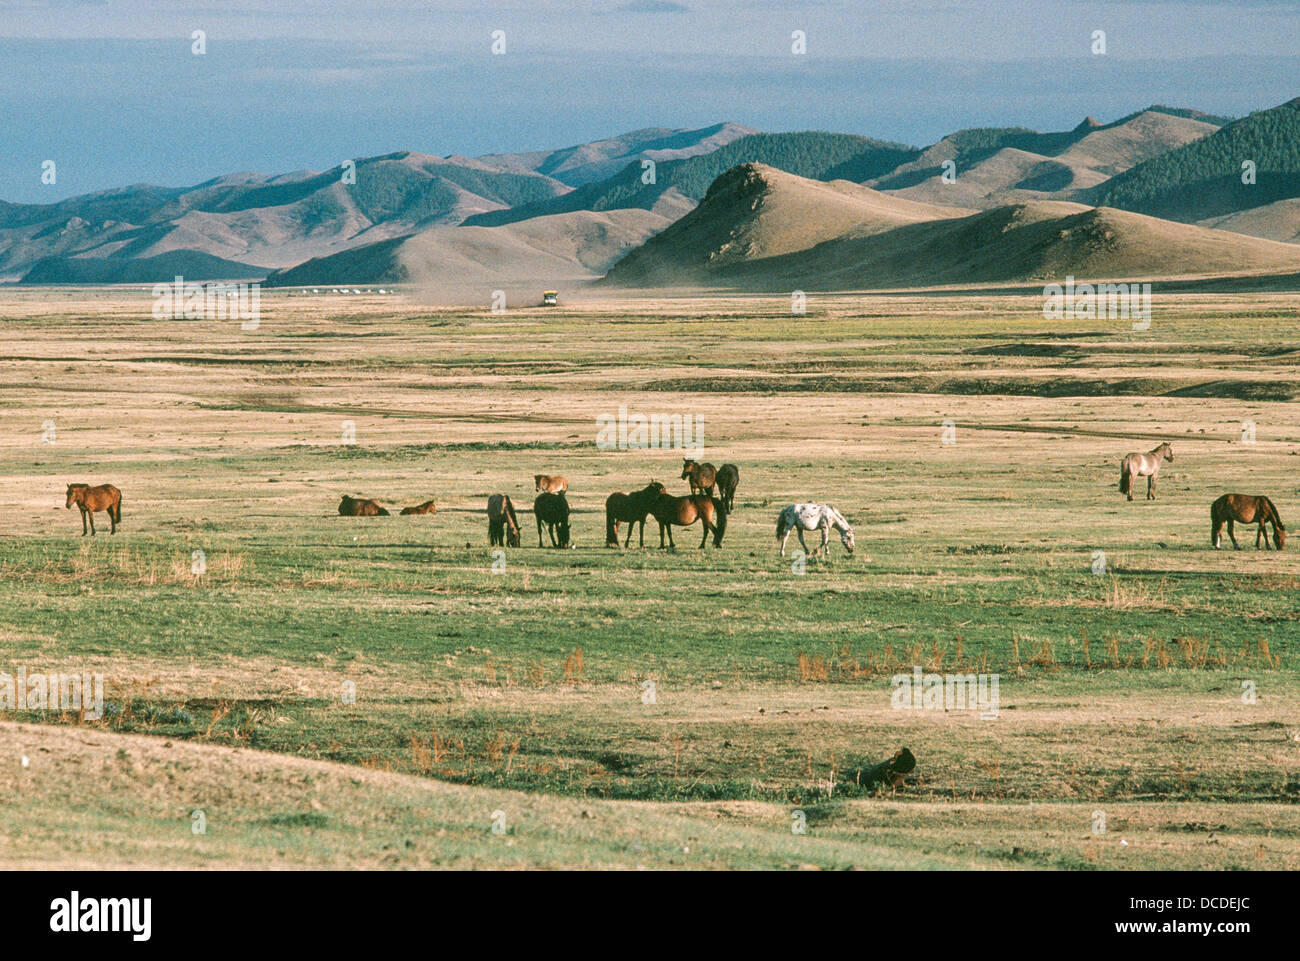 Nomadi cammelli e cavalli pascolano in steppe con le montagne alle spalle. Mongolia Foto Stock